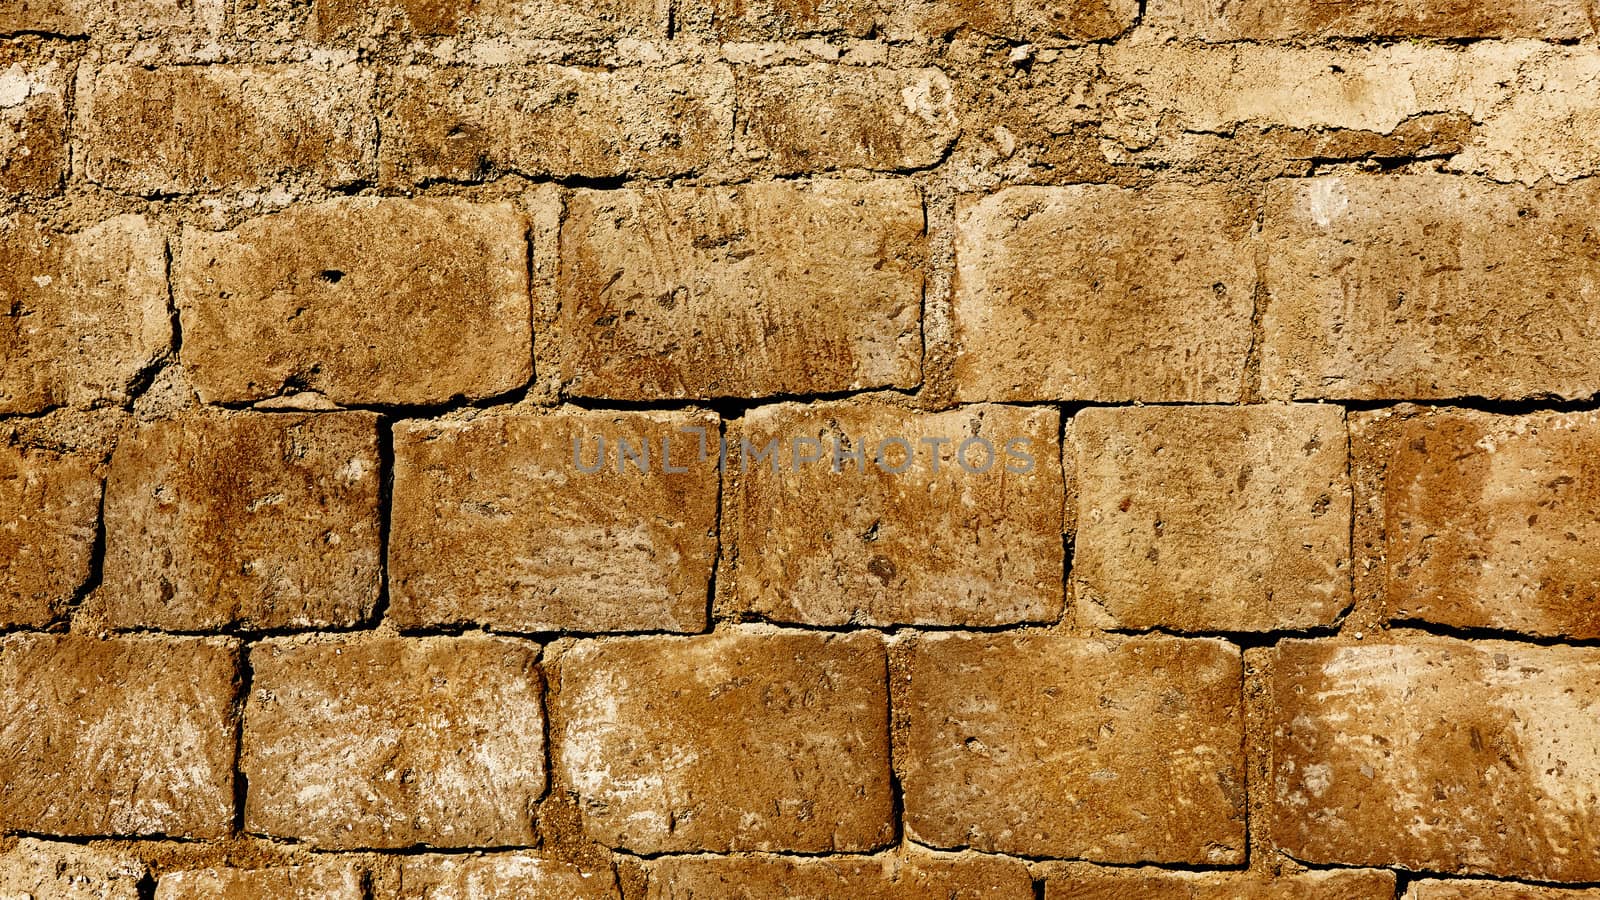 stone wall texture photo by sarymsakov